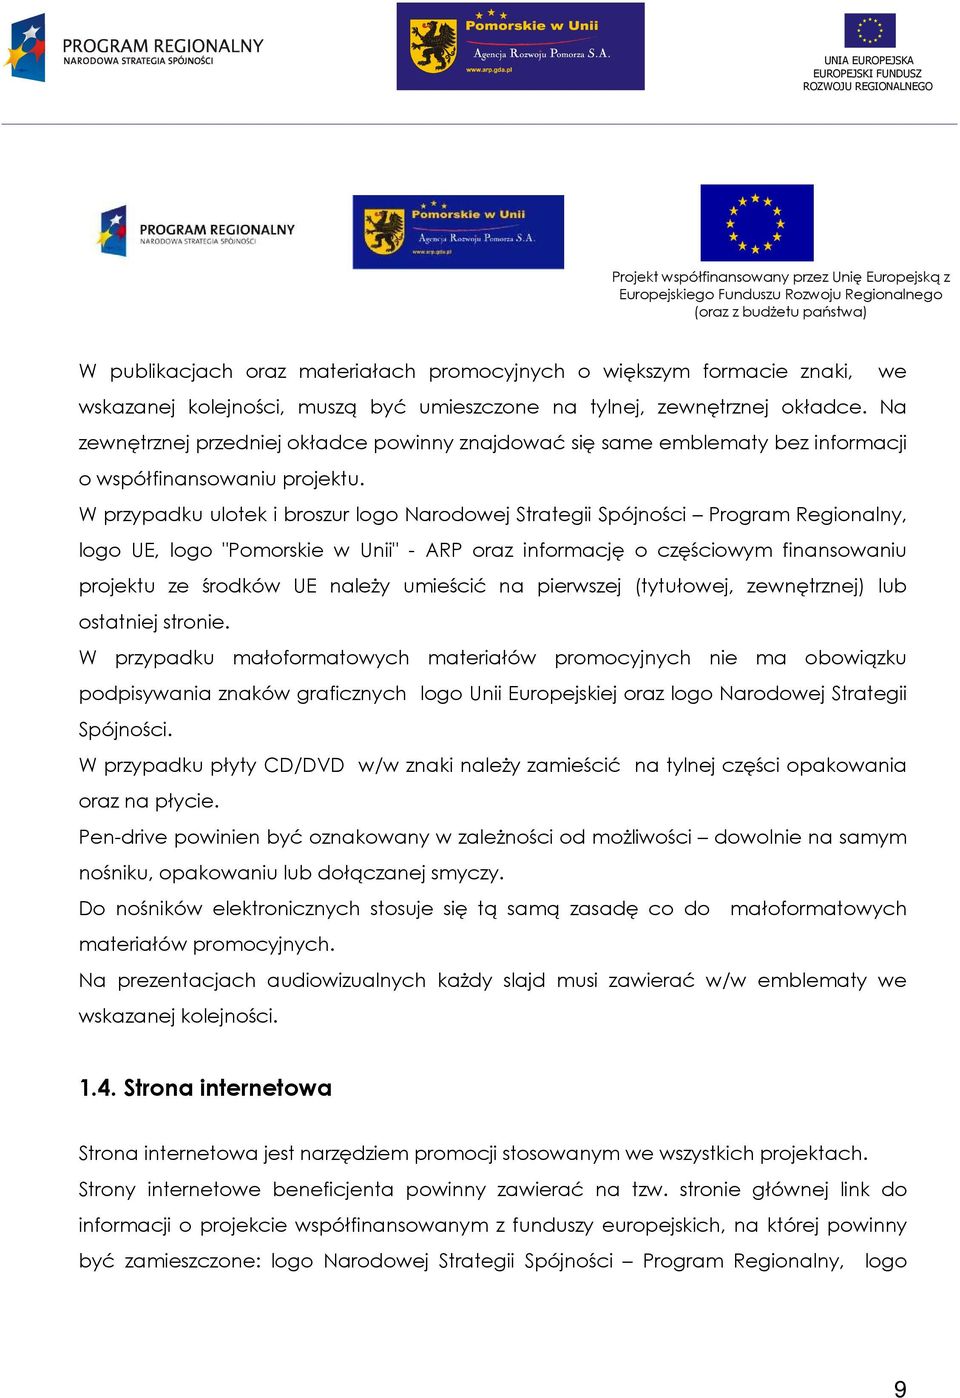 W przypadku ulotek i broszur logo Narodowej Strategii Spójności Program Regionalny, logo UE, logo "Pomorskie w Unii" - ARP oraz informację o częściowym finansowaniu projektu ze środków UE naleŝy